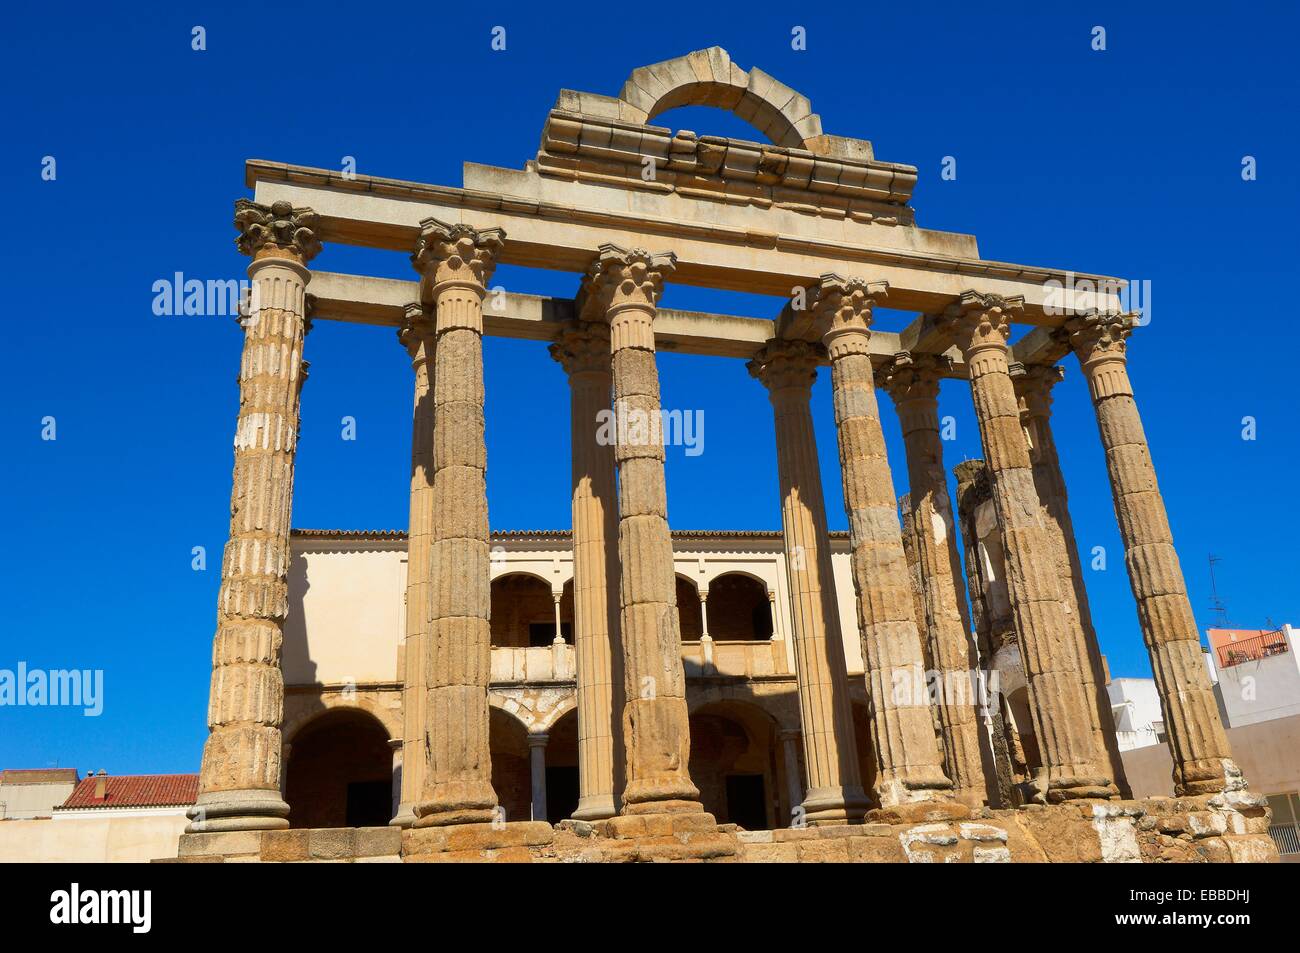 Storia antica antichità archeologia dettagli architettonici architettura città di Badajoz immagine a colori giorno colonna dettaglio Diana Foto Stock